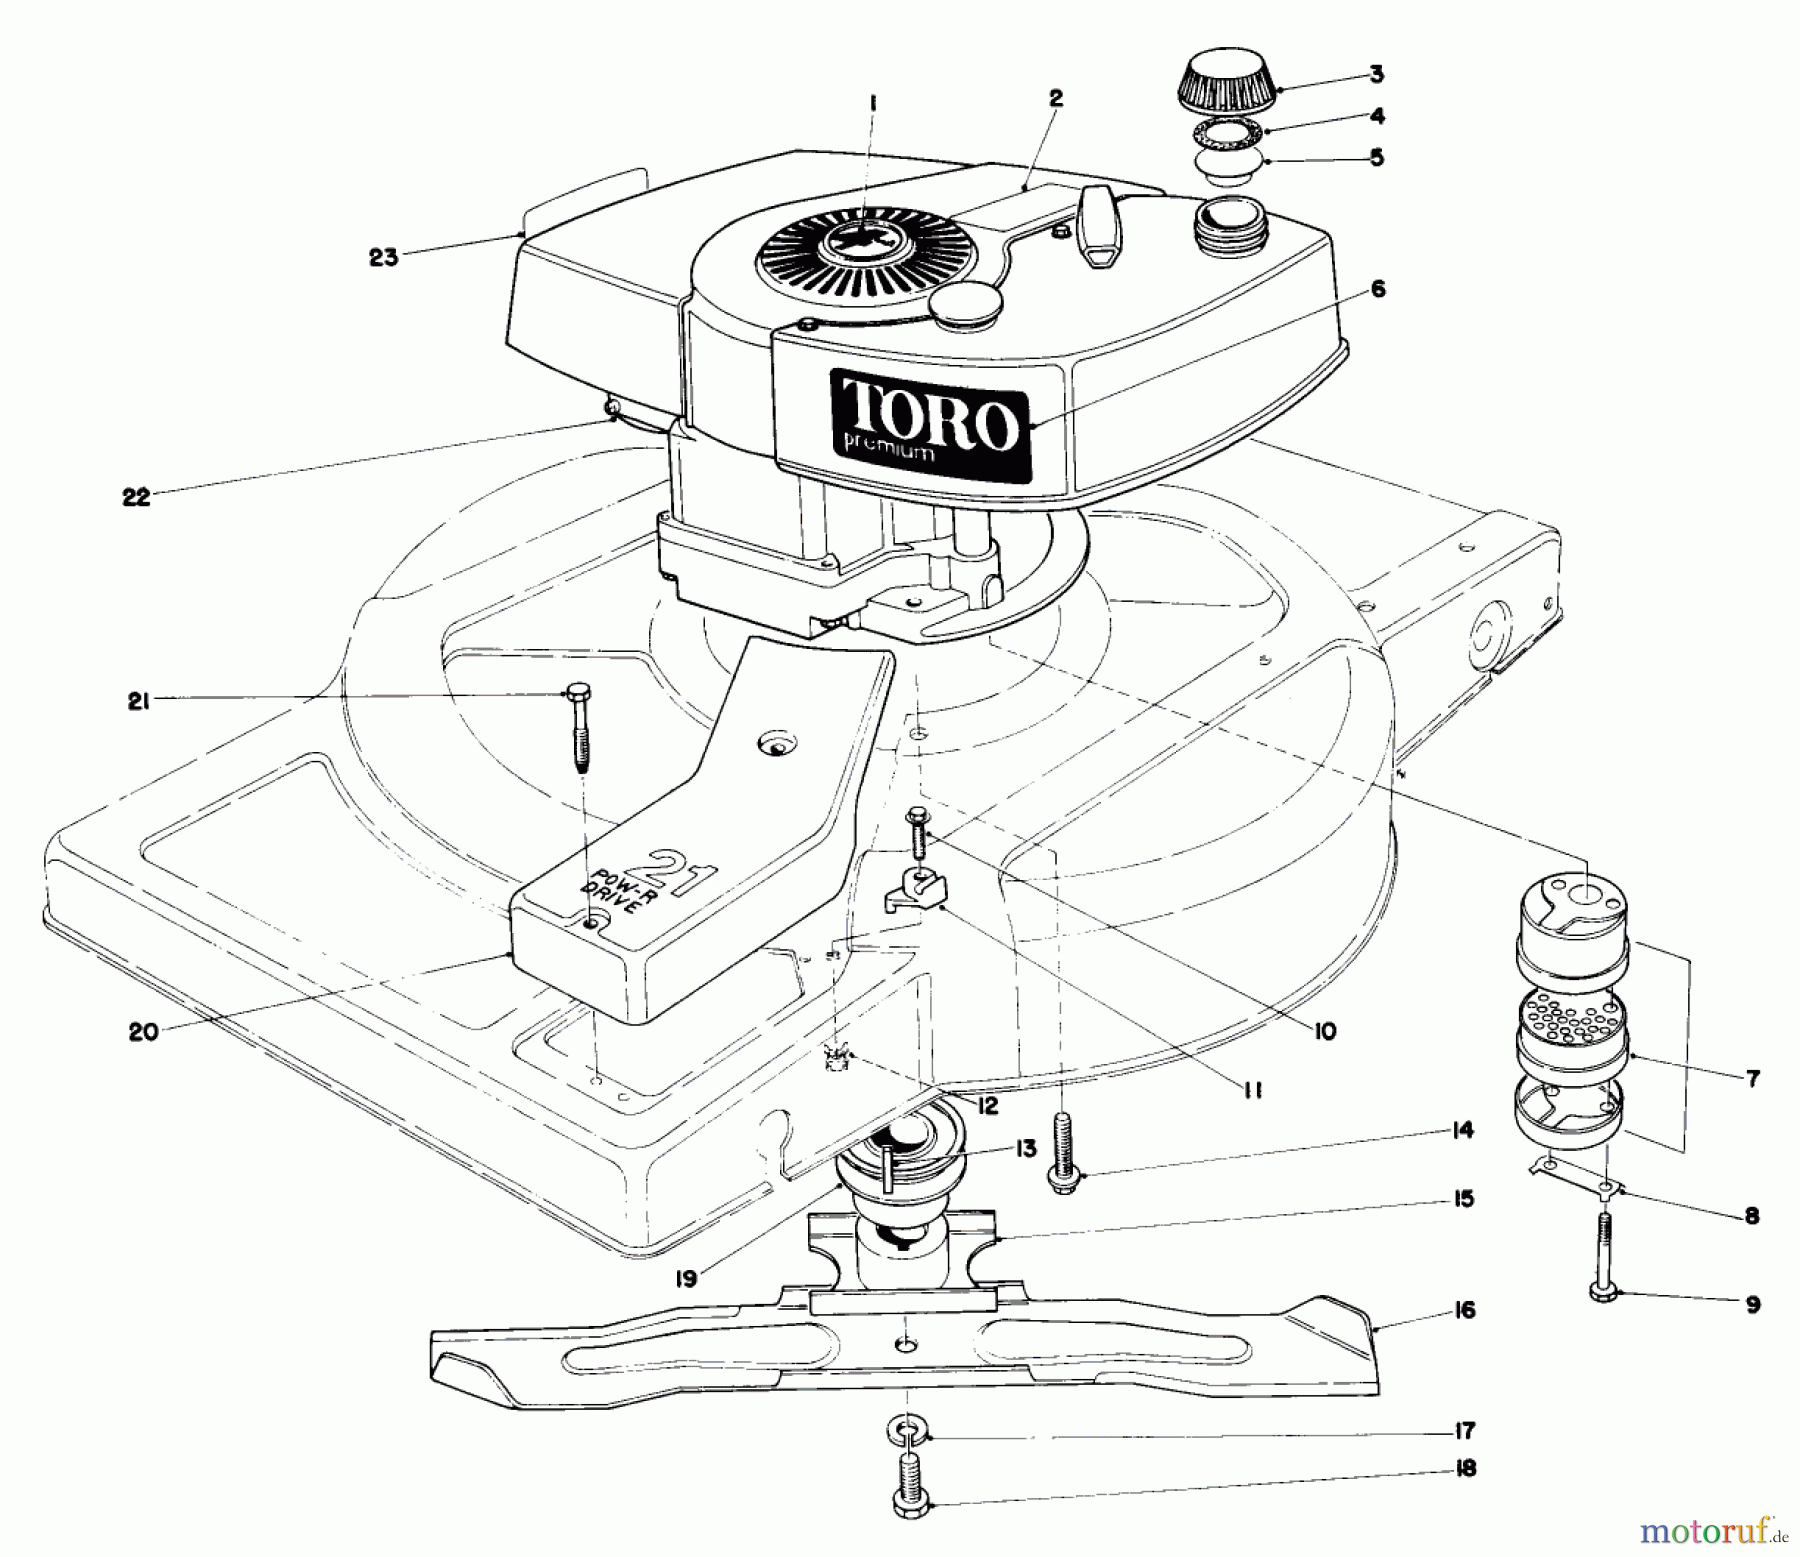  Toro Neu Mowers, Walk-Behind Seite 1 18060 - Toro Lawnmower, 1980 (0000001-0999999) ENGINE ASSEMBLY